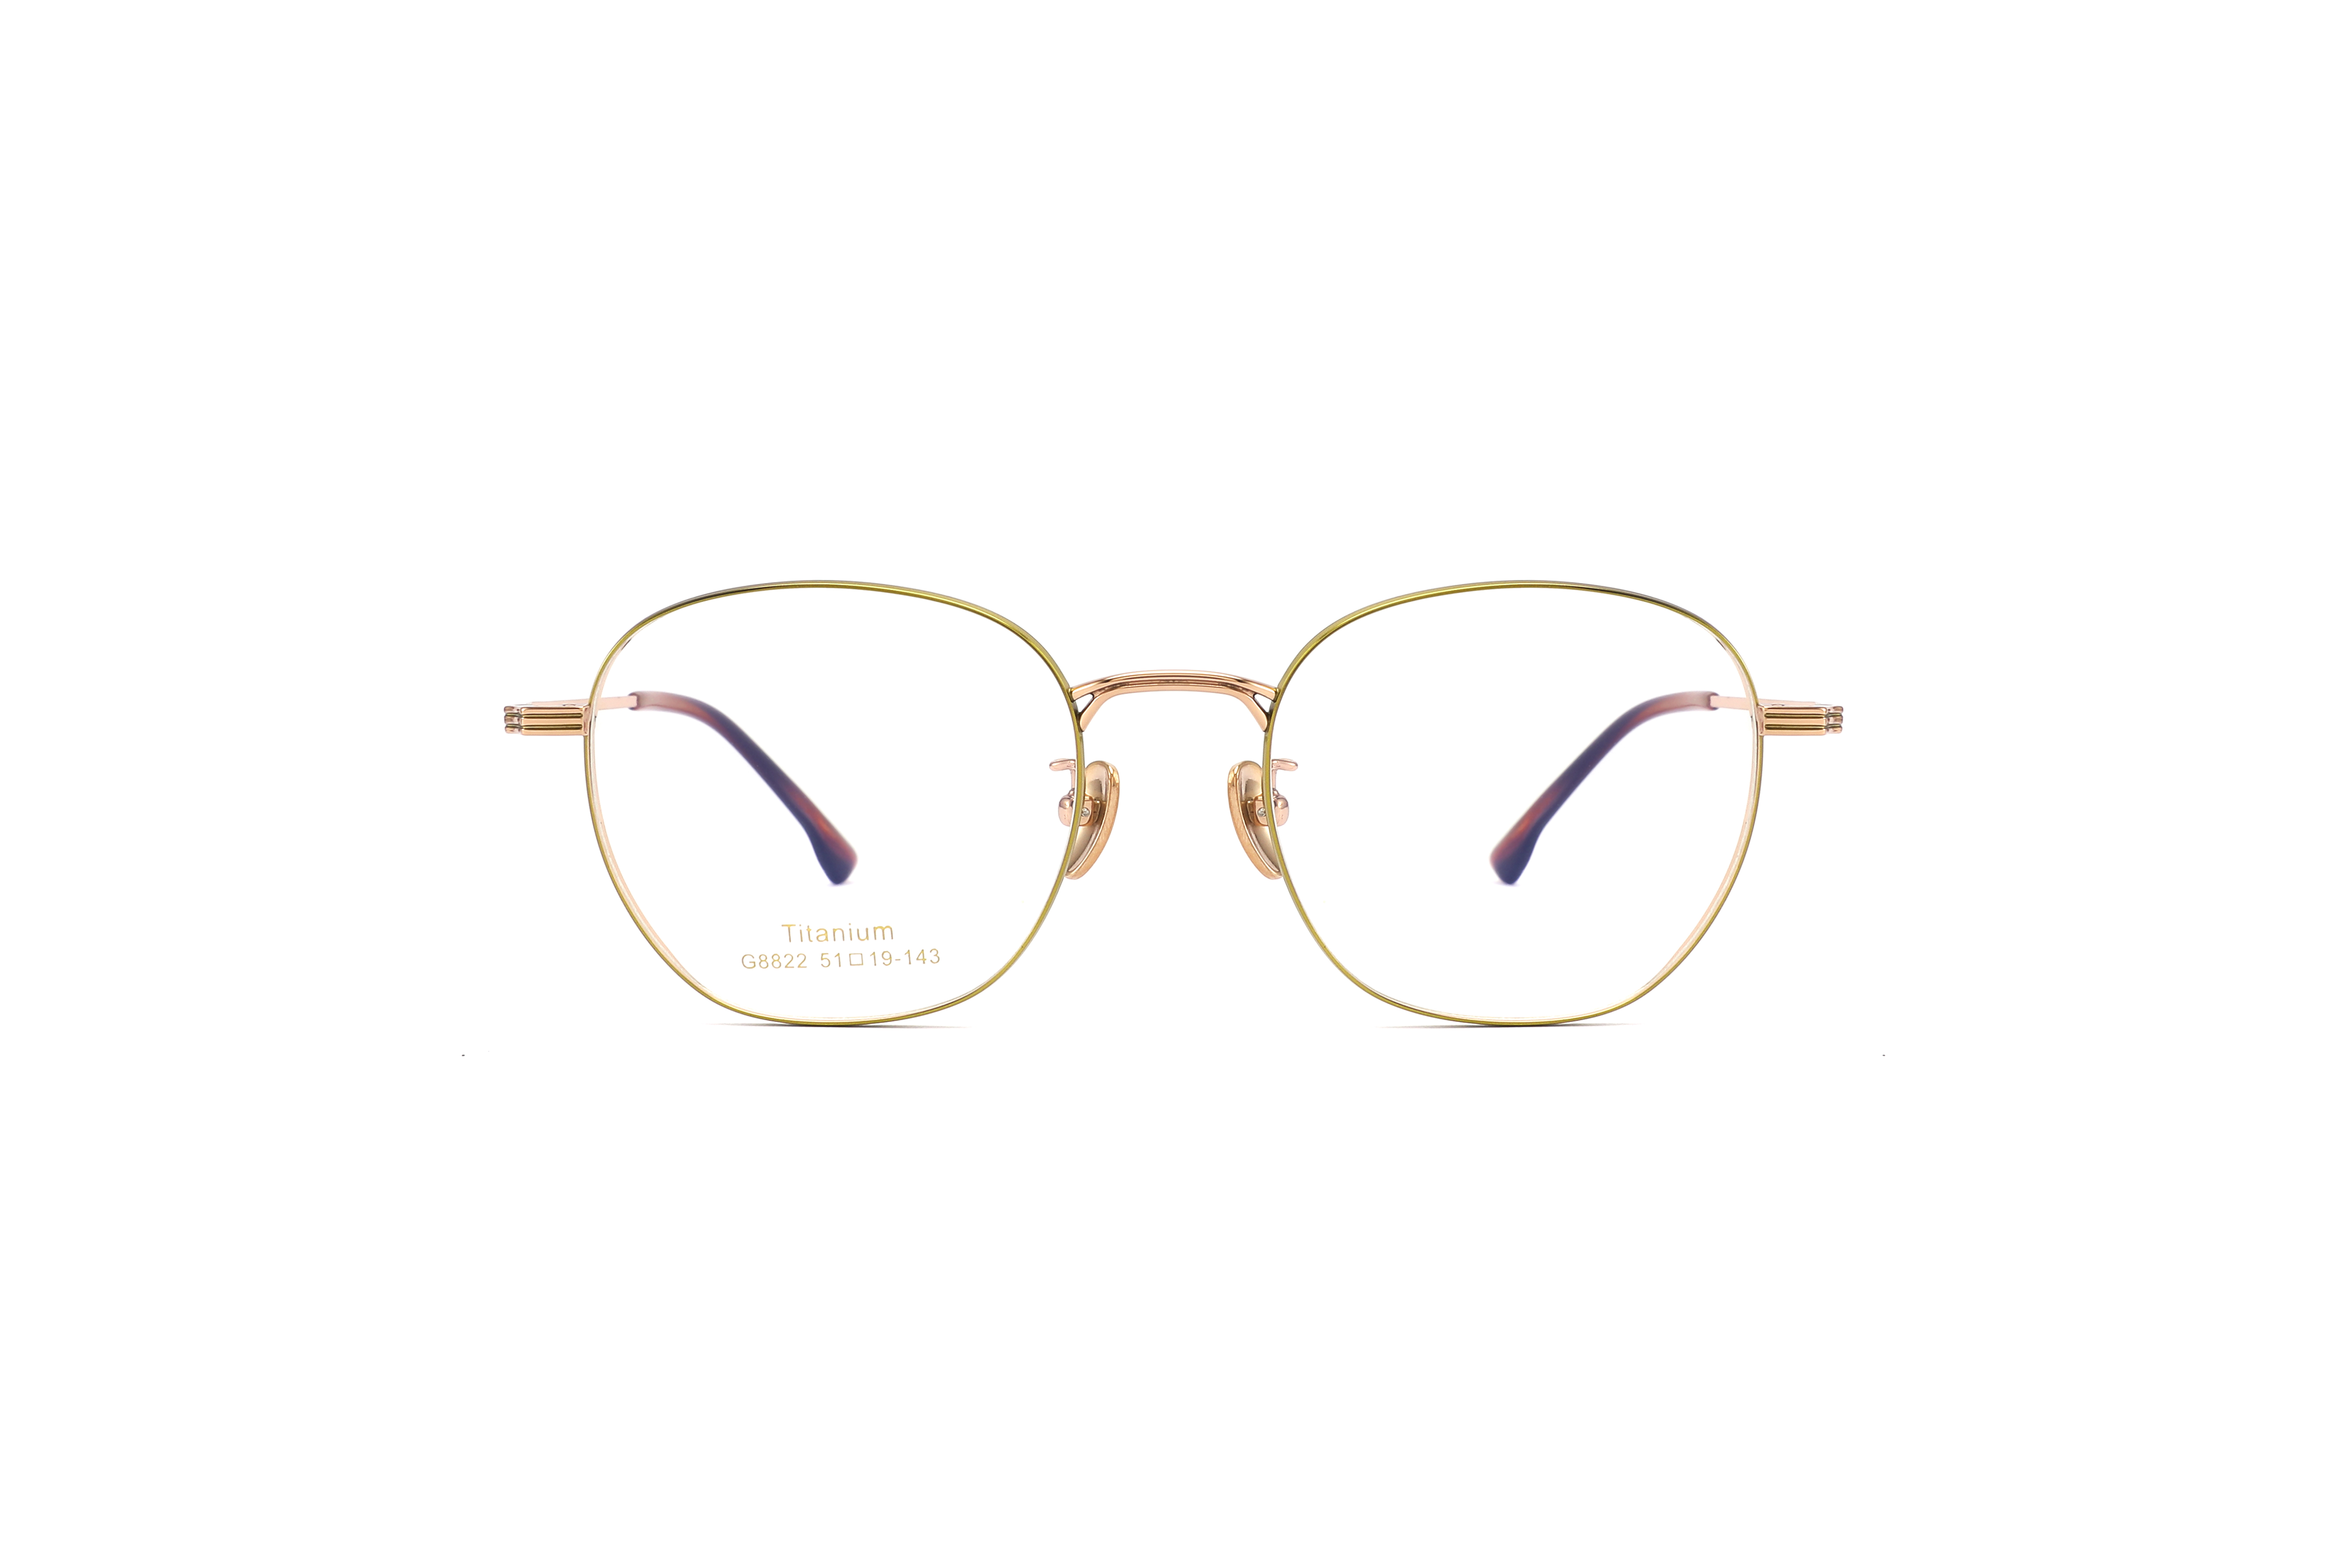 Hign Quality Titanium Eyeglasses Frame Darry Optical 8822